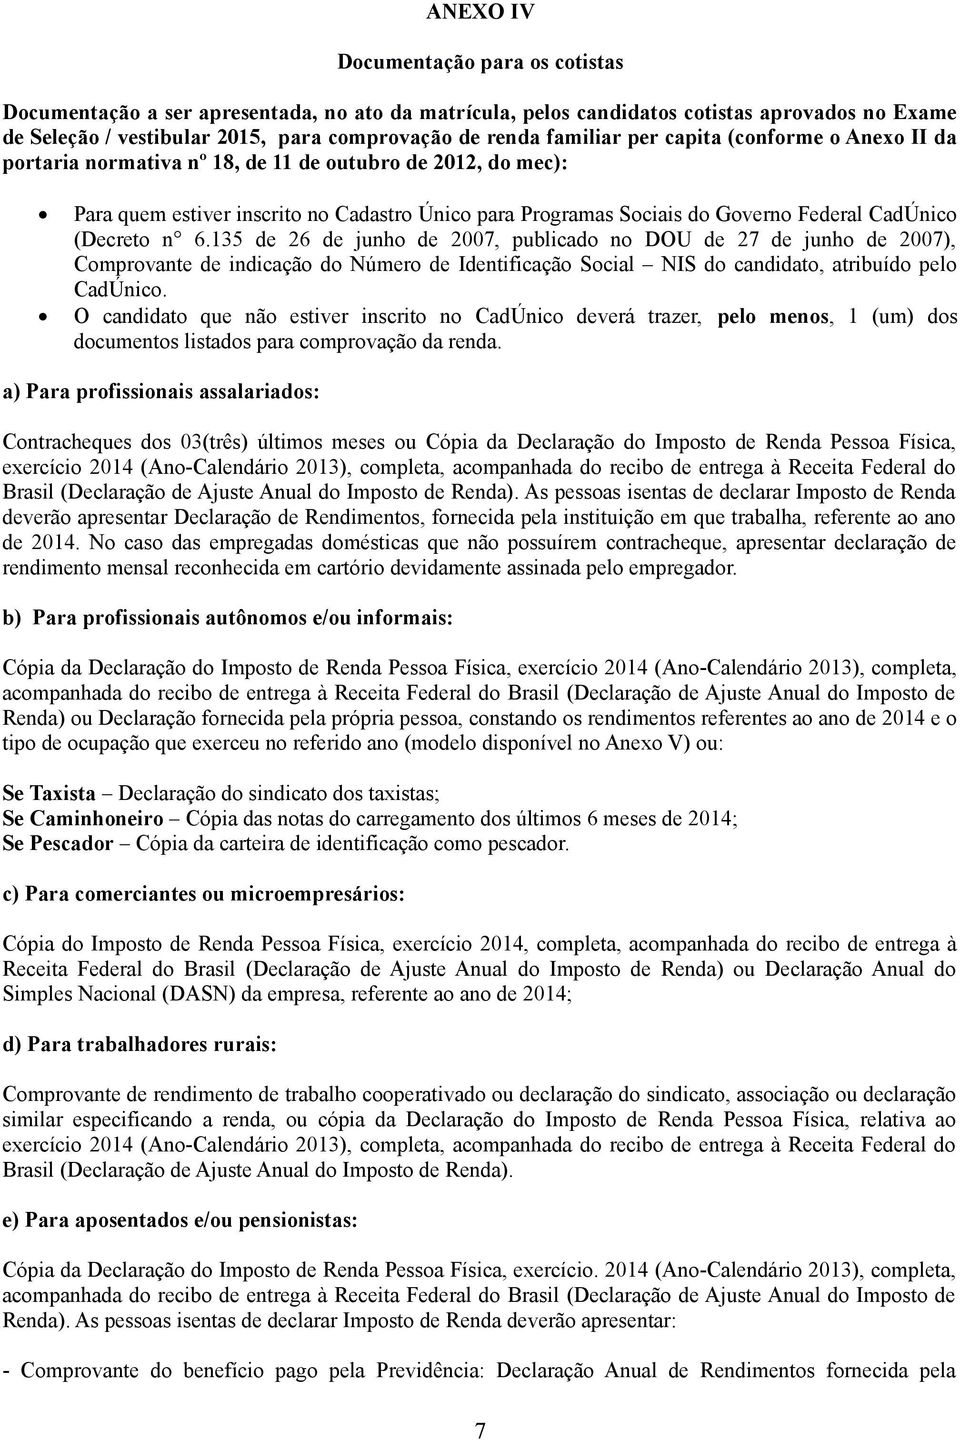 CadÚnico (Decreto n 6.135 de 26 de junho de 2007, publicado no DOU de 27 de junho de 2007), Comprovante de indicação do Número de Identificação Social NIS do candidato, atribuído pelo CadÚnico.